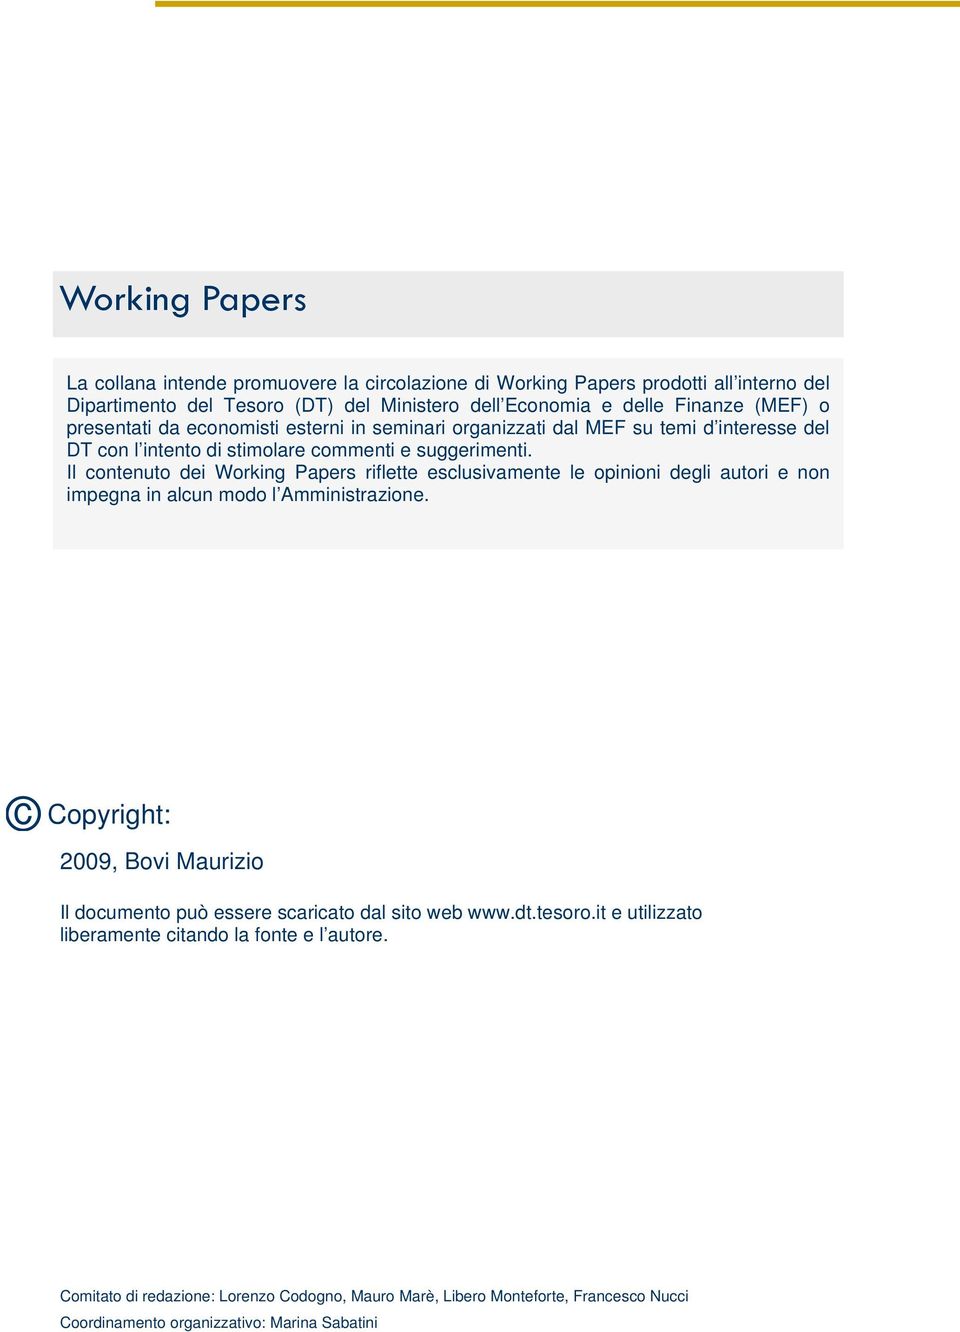 Il contenuto dei Working Papers riflette esclusivamente le opinioni degli autori e non impegna in alcun modo l Amministrazione.